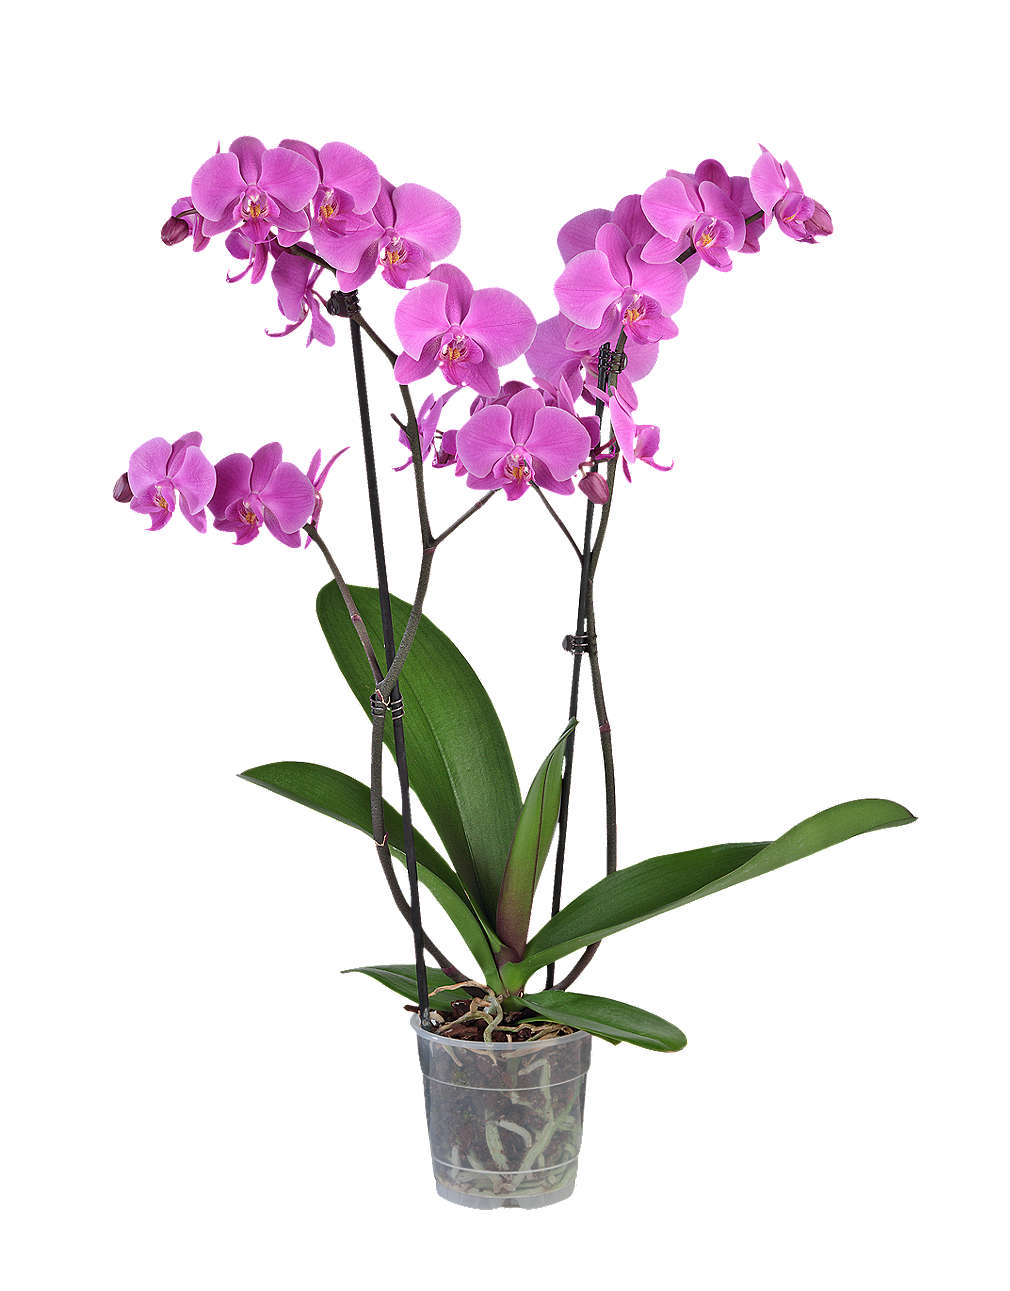 Zobrazit nabídku Orchidea-Phalaenopis 